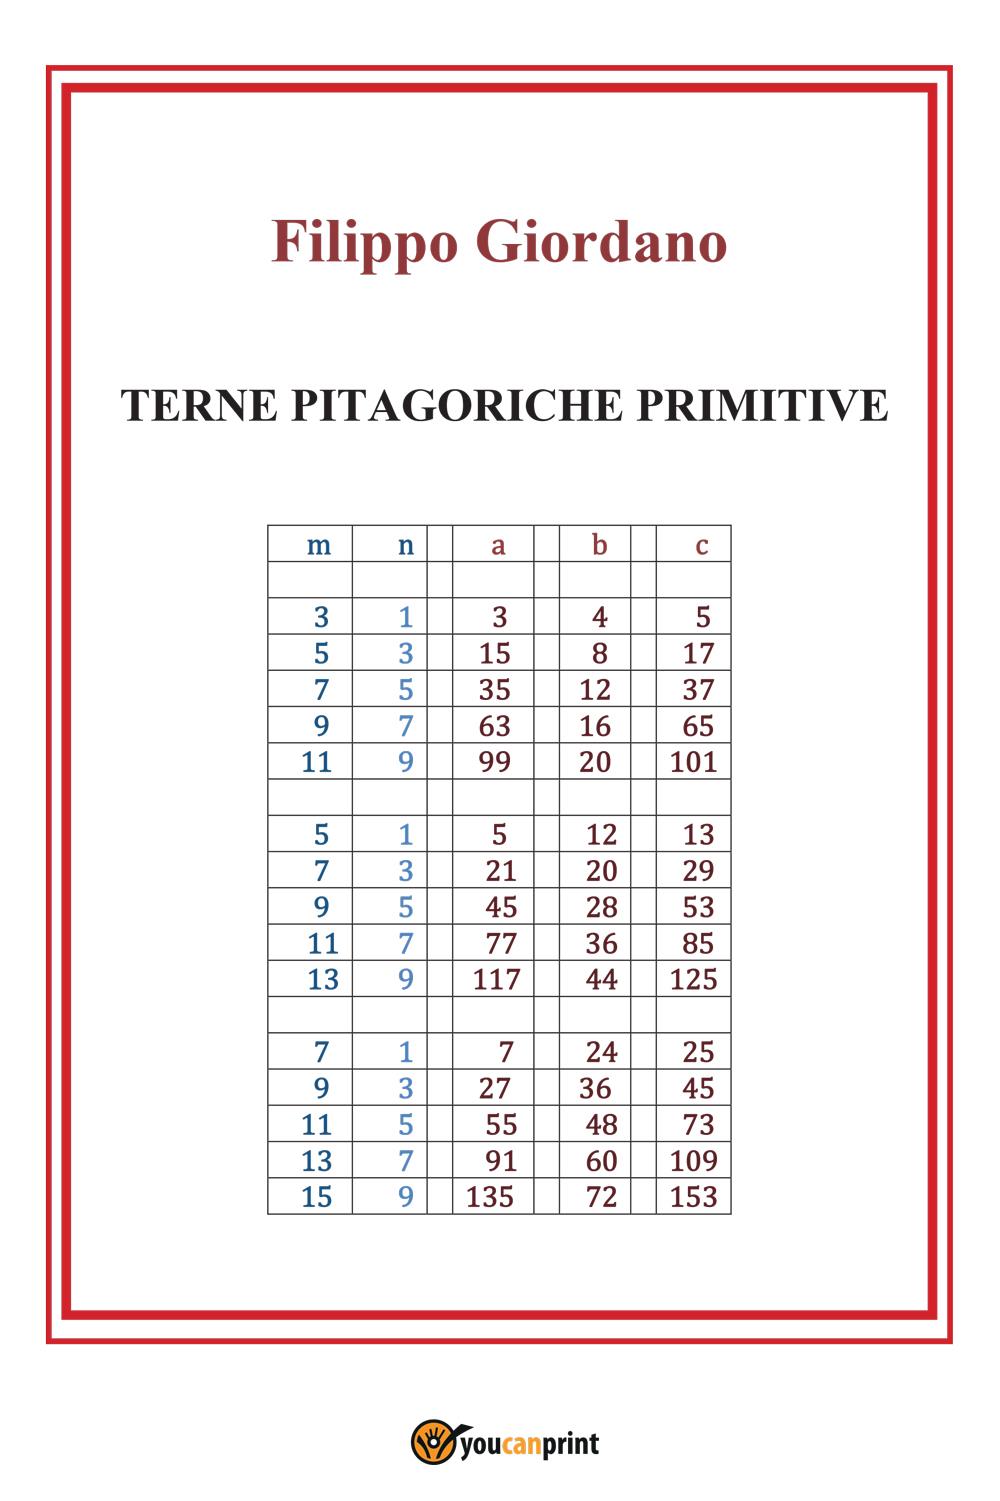 Terne Pitagoriche primitive